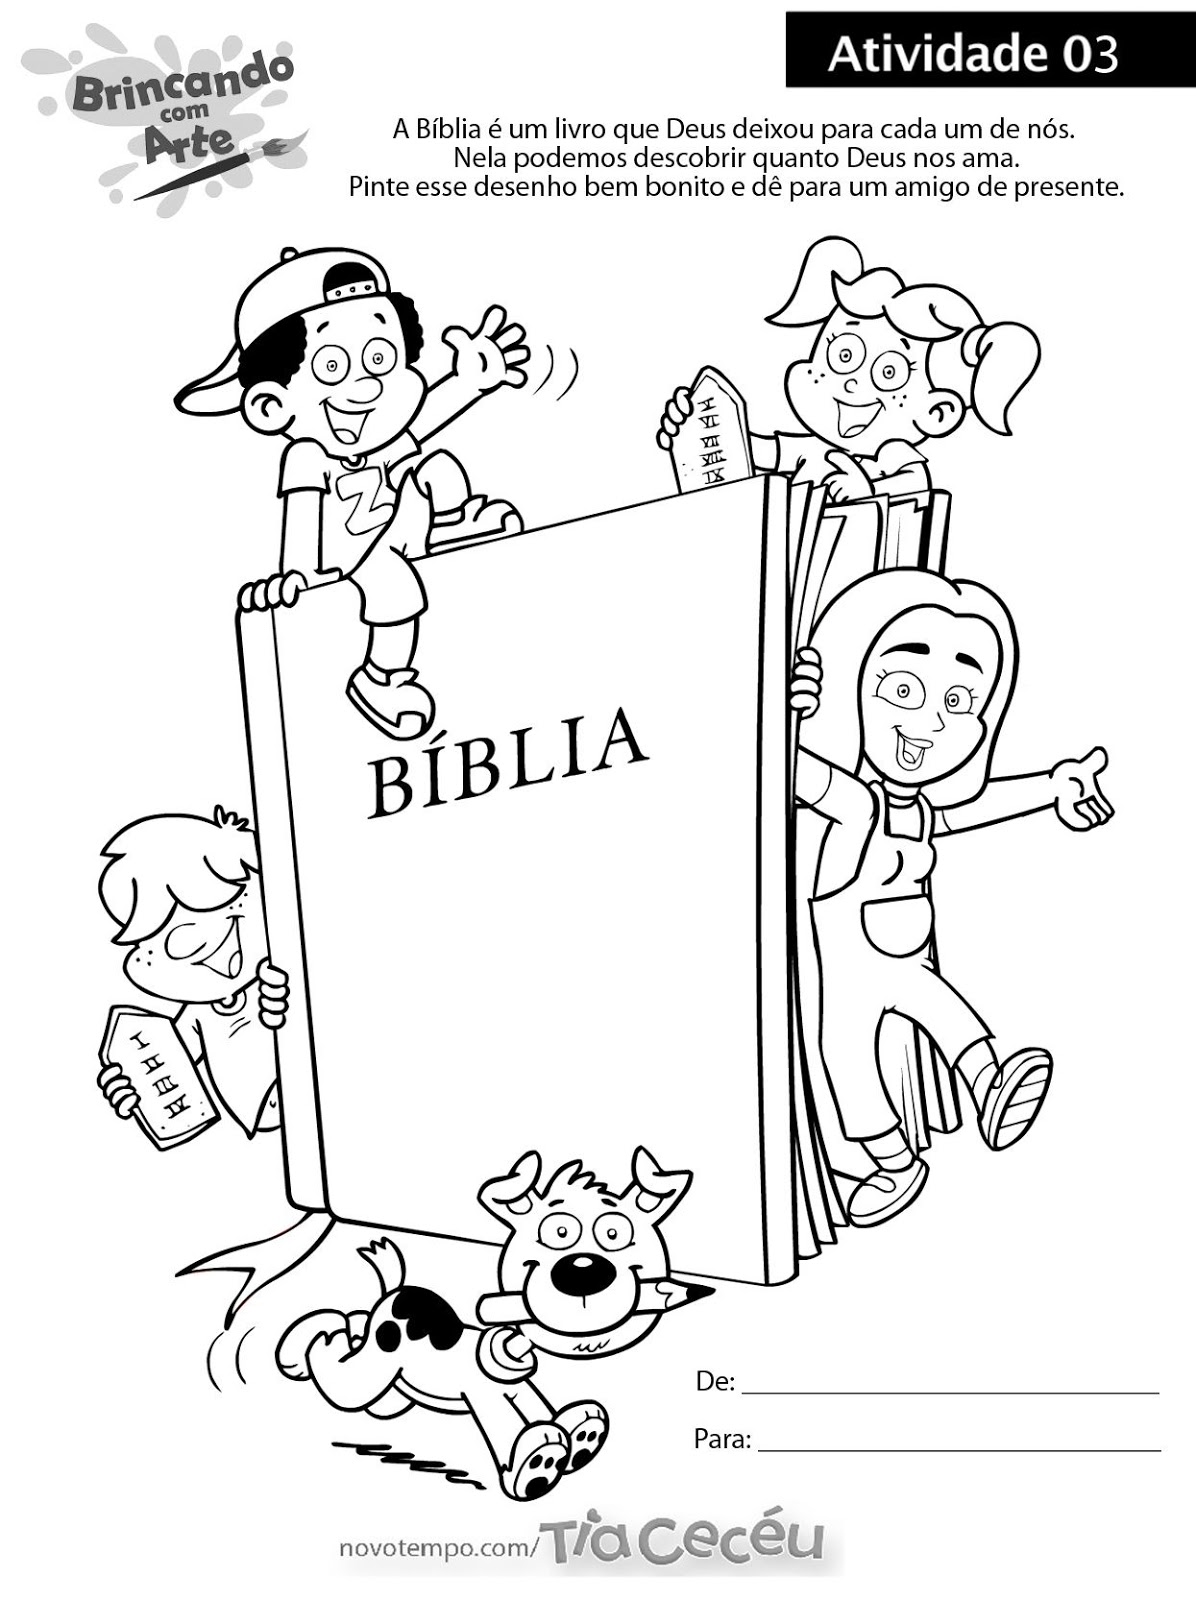 Atividade sobre a Bíblia